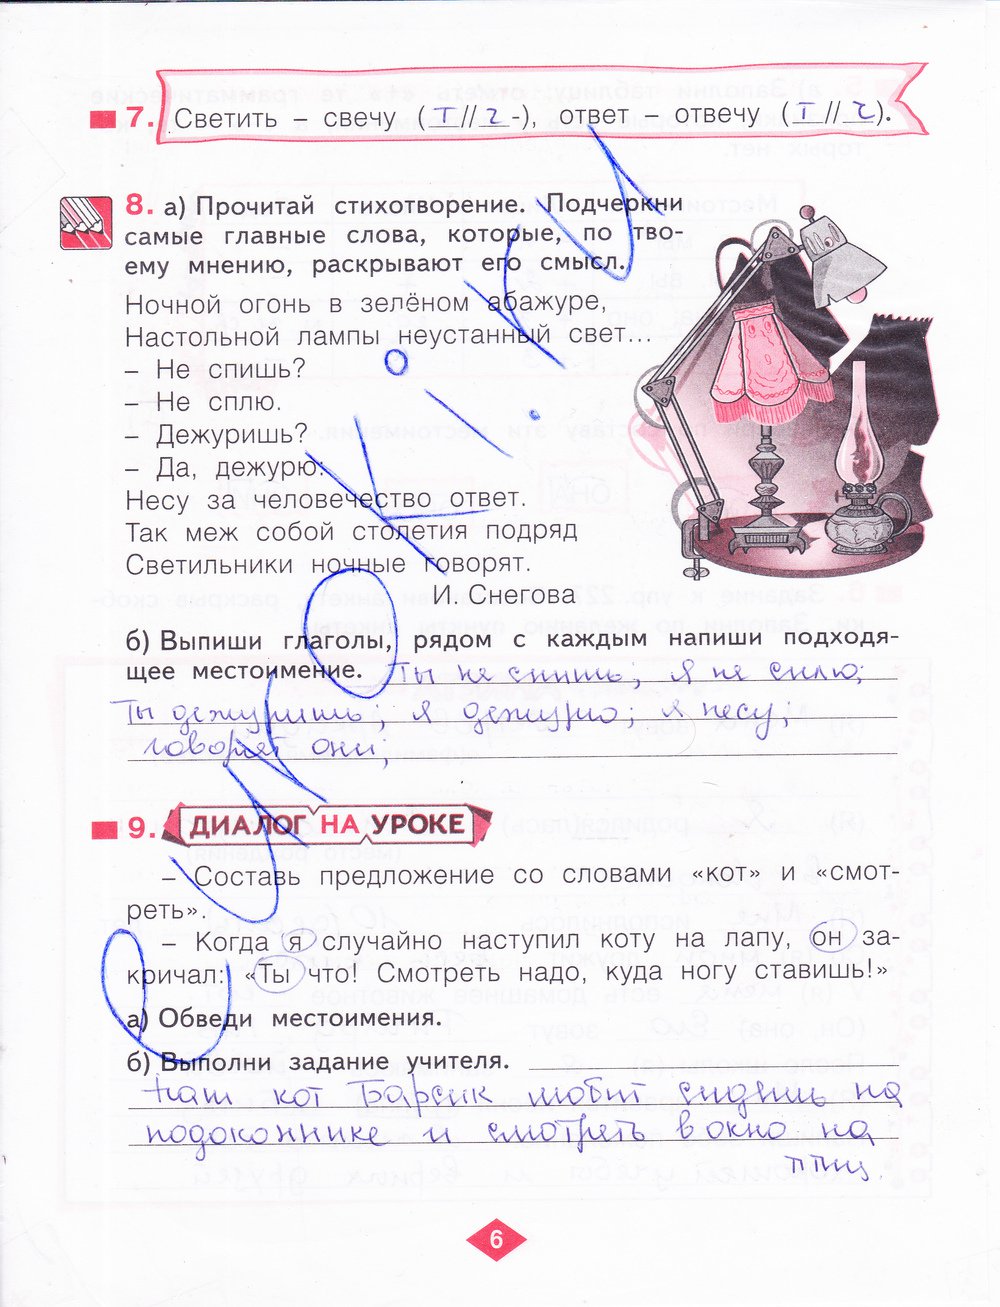 гдз 4 класс рабочая тетрадь часть 2 страница 6 русский язык Нечаева, Воскресенская